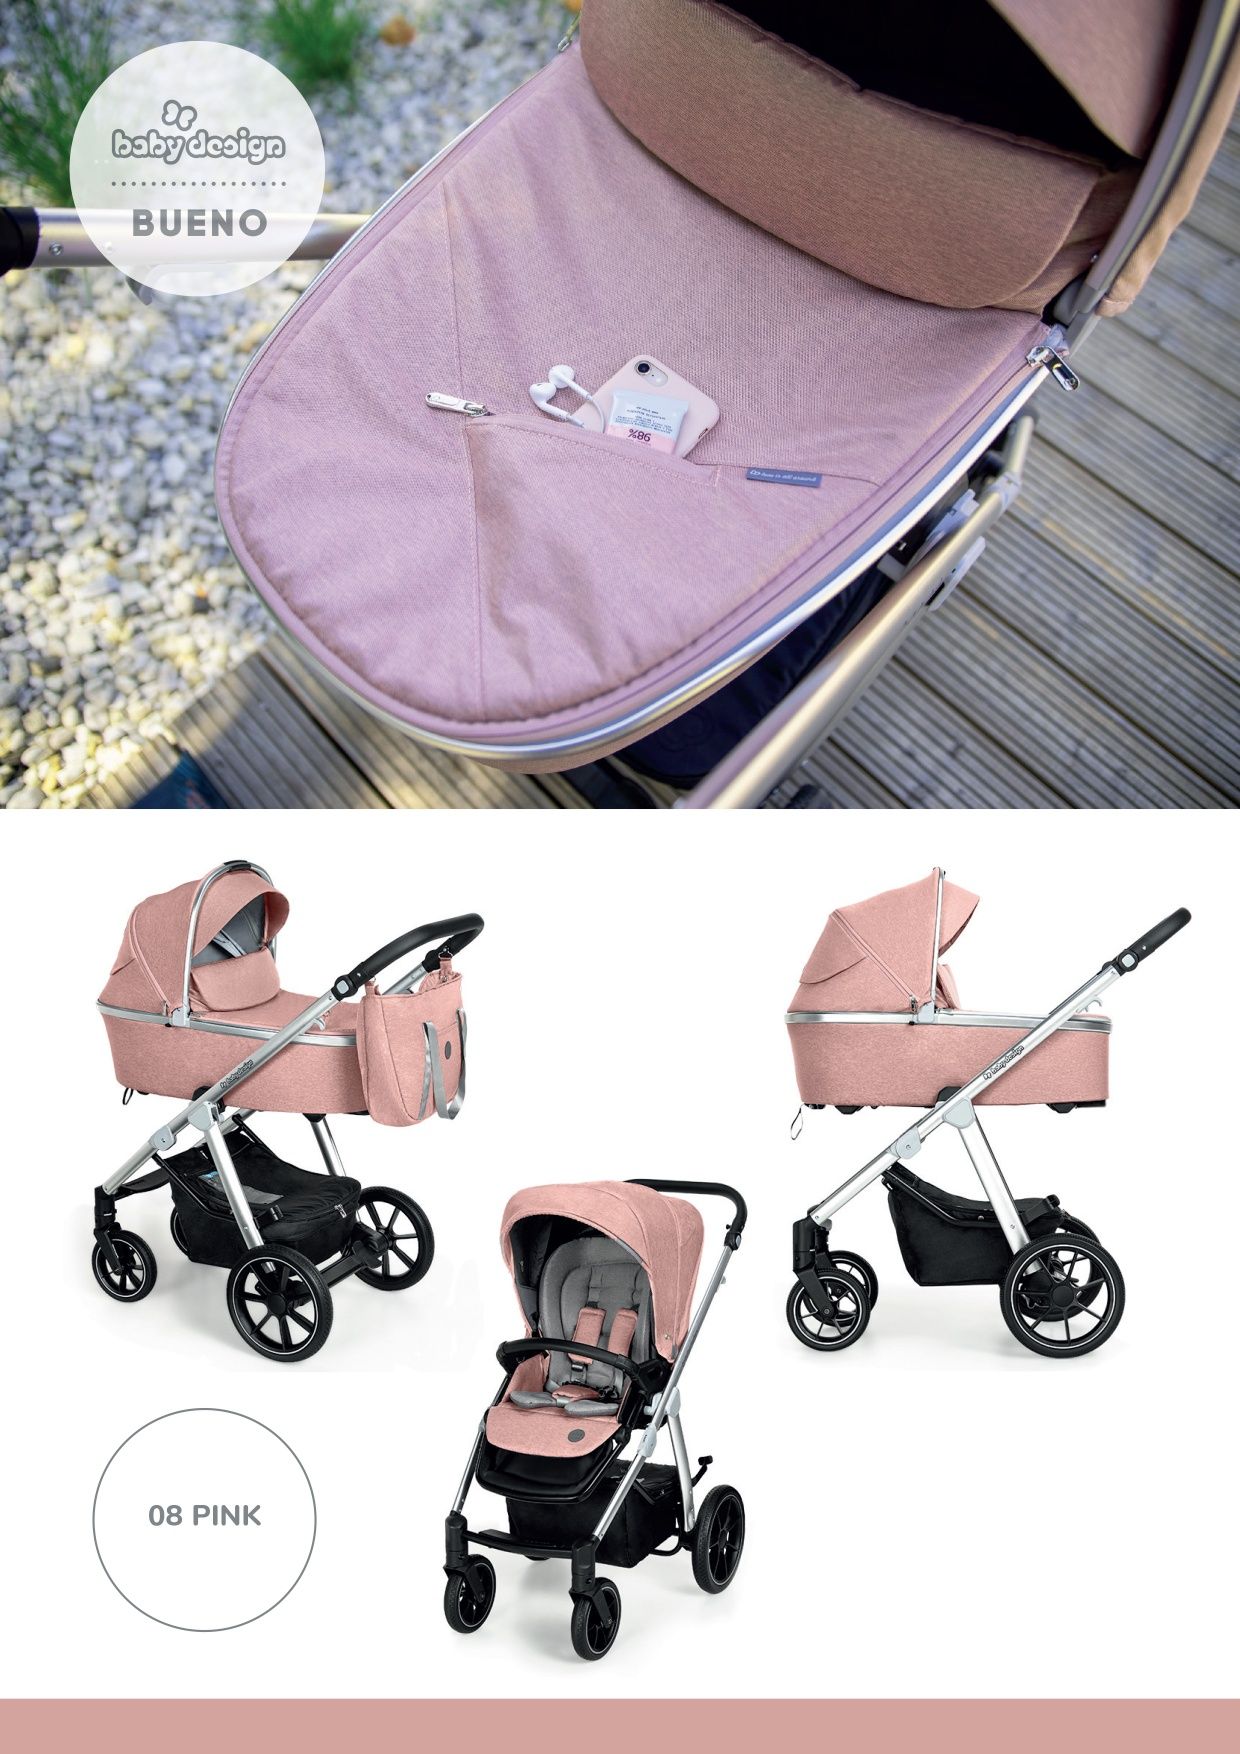 NOWE Baby Design BUENO wózek z super wyposażeniem